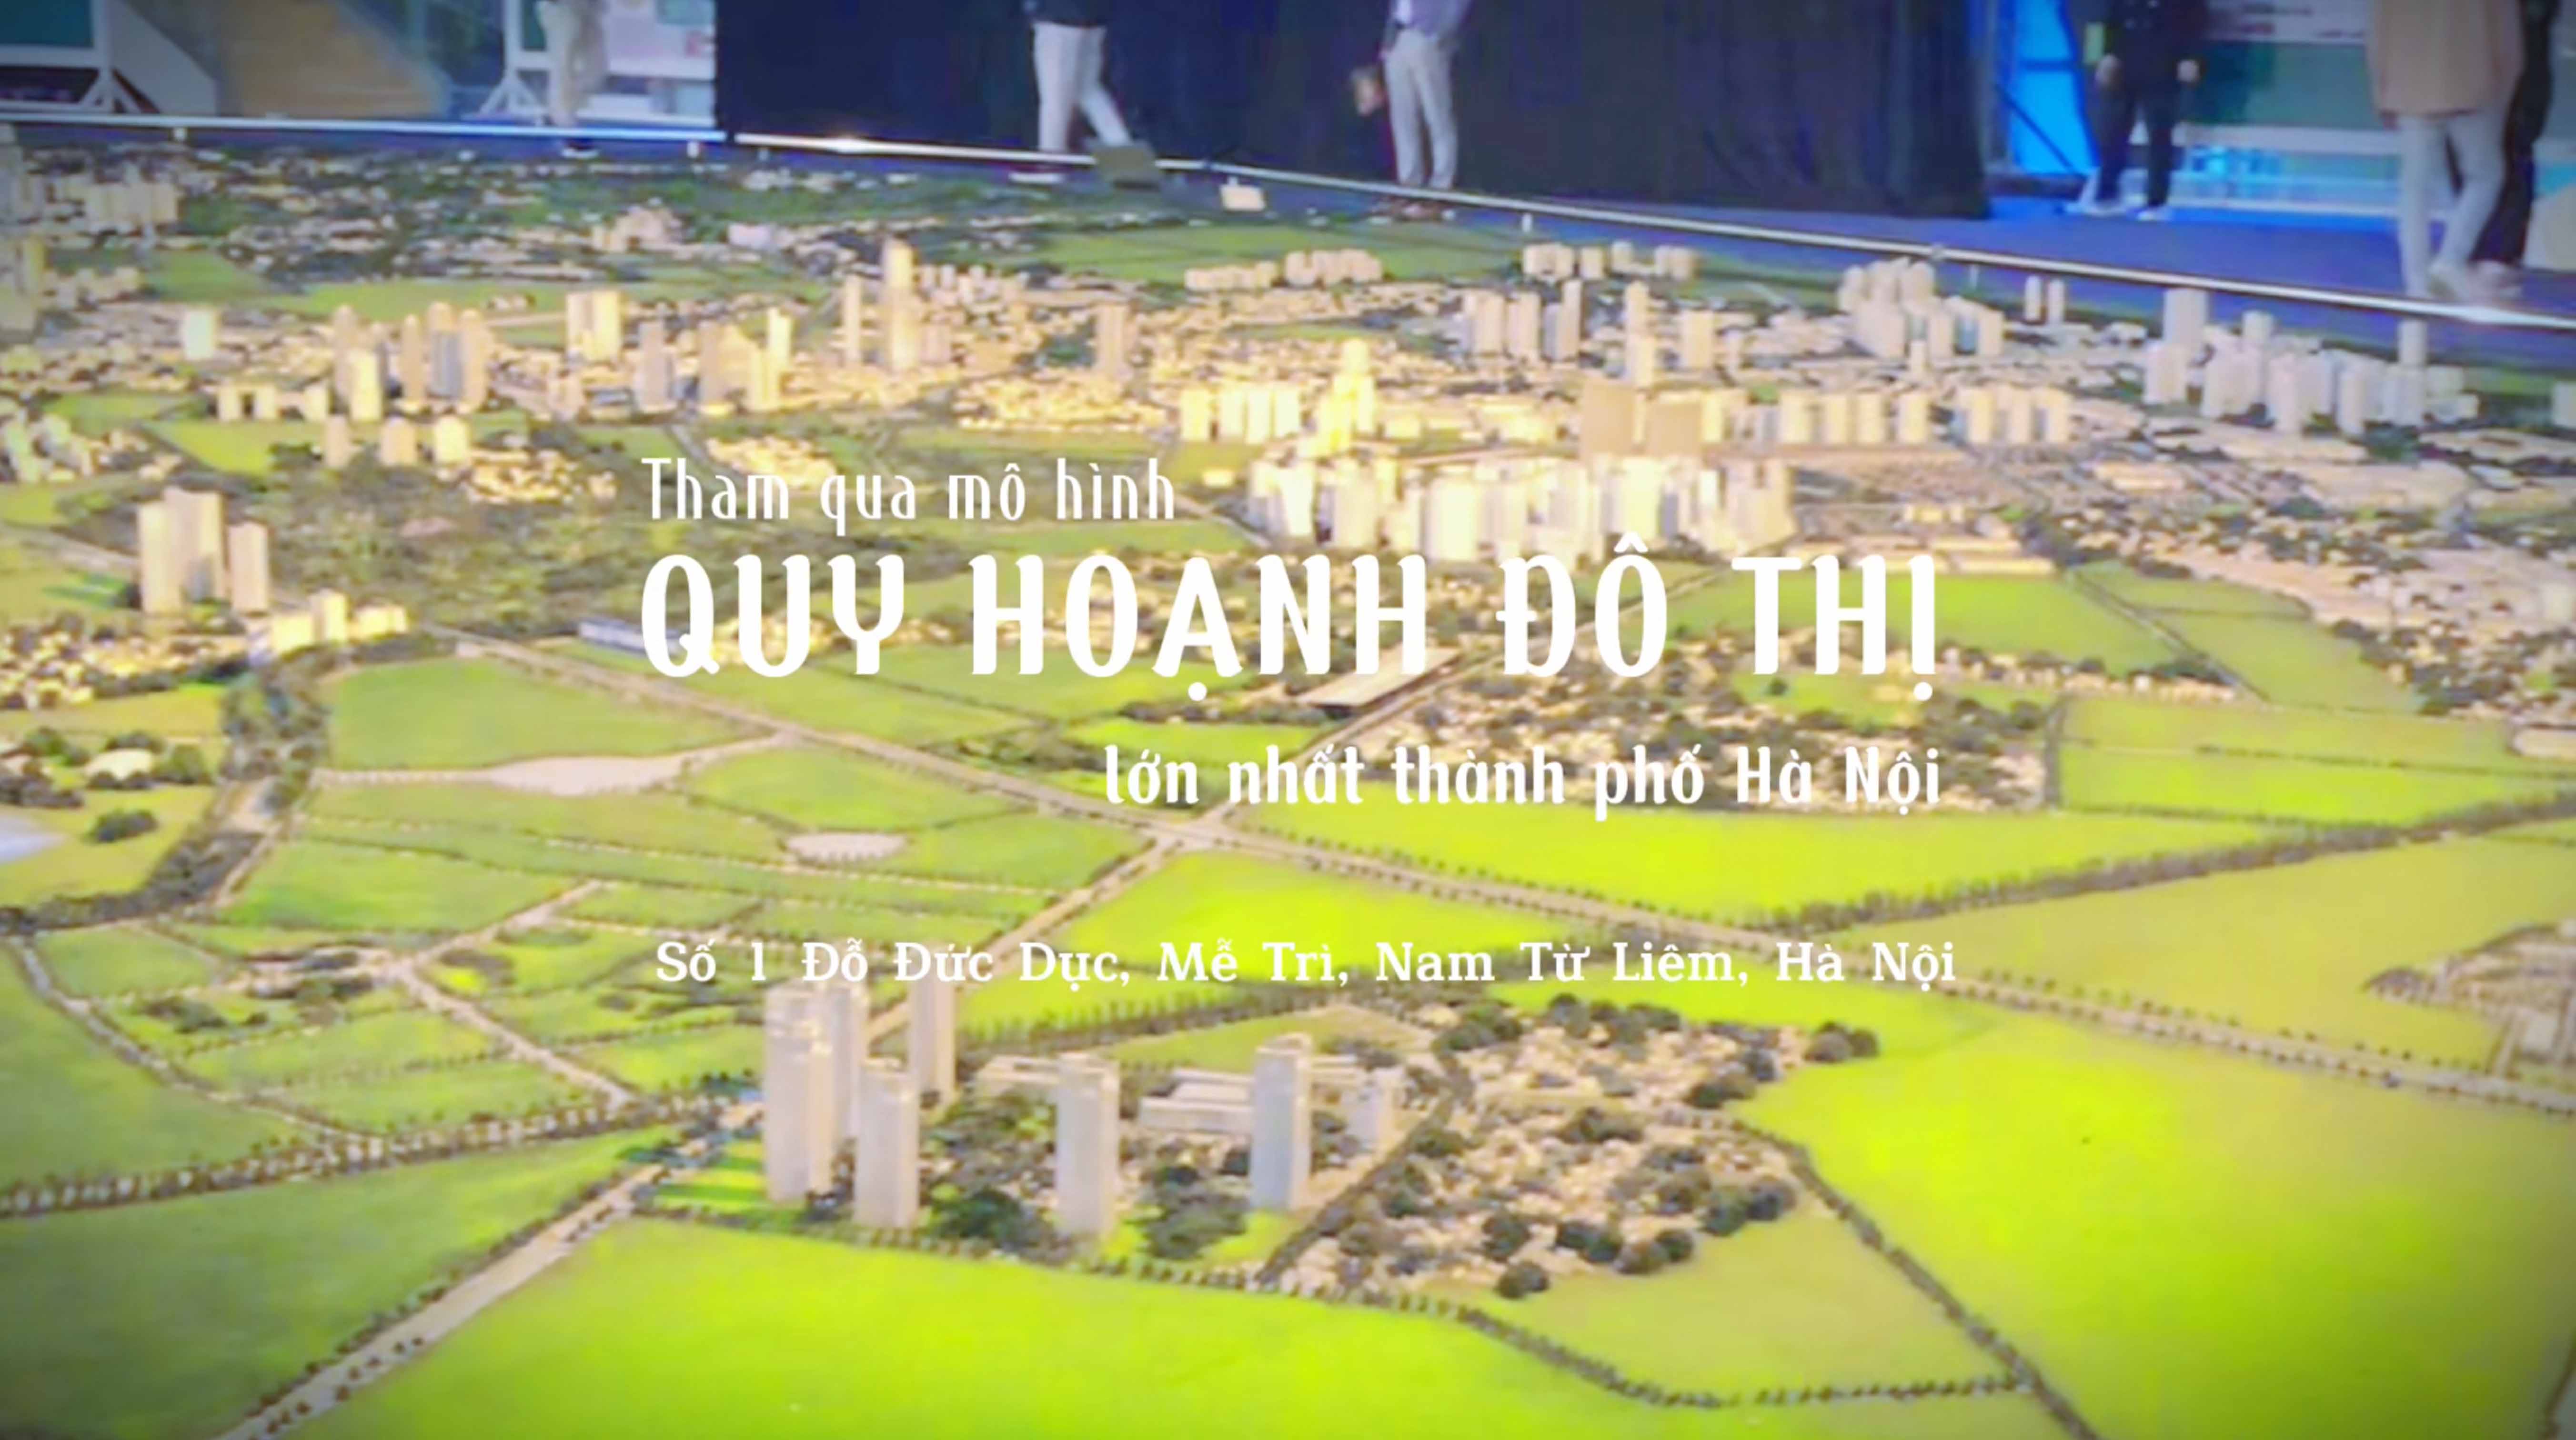 Tham quan mô hình quy hoạch đô thi lớn nhất thành phố Hà Nội 1